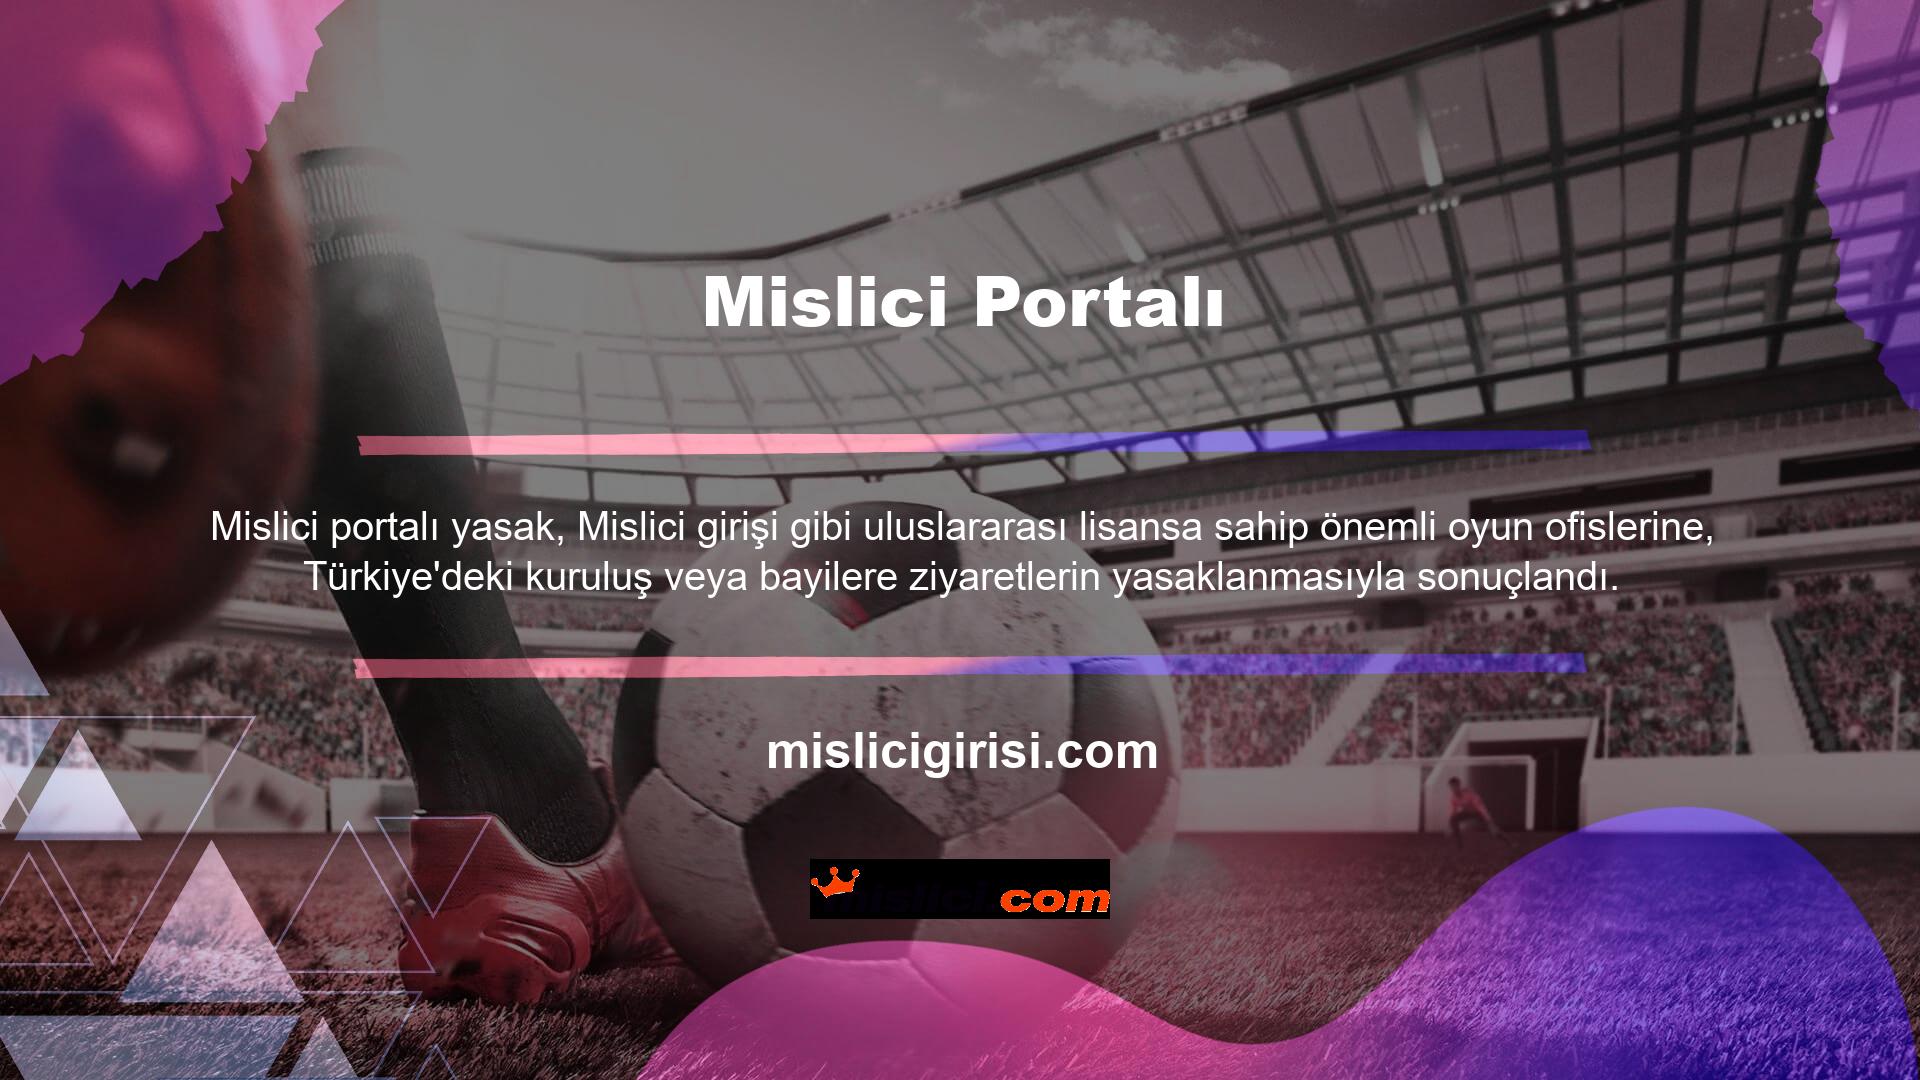 Mevcut yasaya rağmen Mislici Portal gibi çevrimiçi oyun siteleri, Türkiye'deki oyun ve casino meraklılarına varlık oluşturmak için hizmet vermektedir